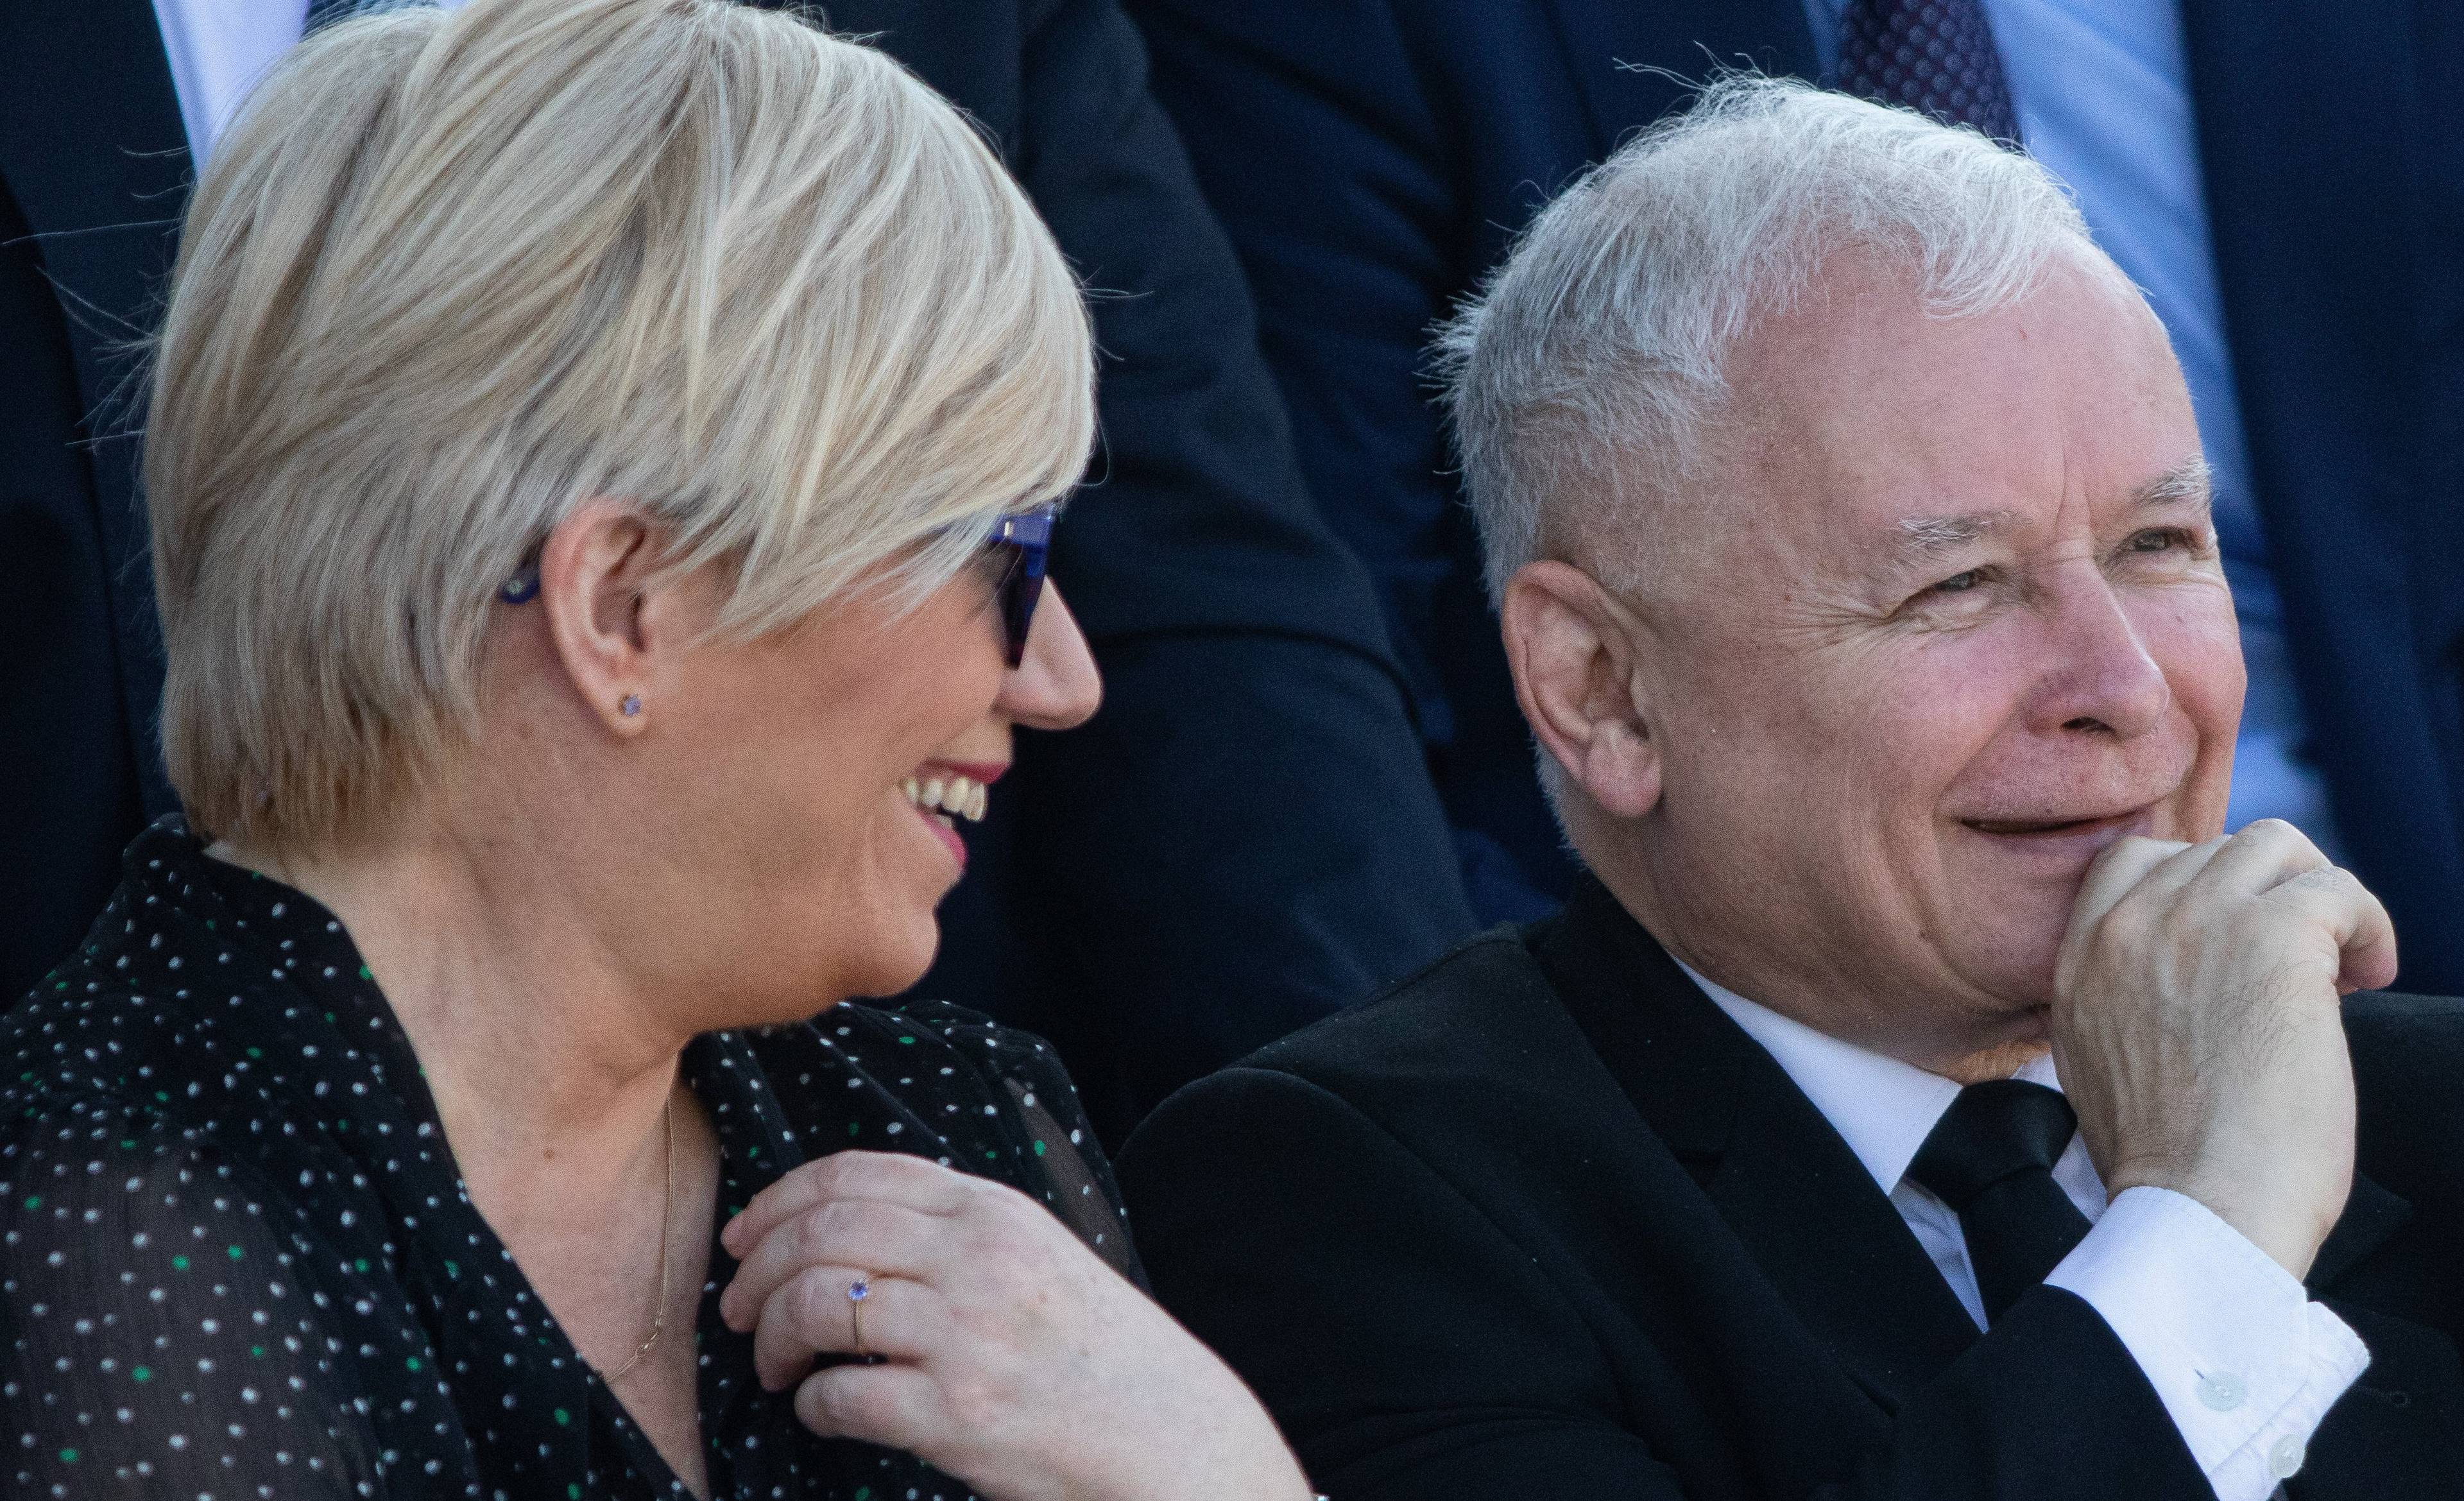 Uśmiechnięta Julia Przyłębska siedzi obok uśmiechniętegoi Jarosłąwa Kaczyńskiego